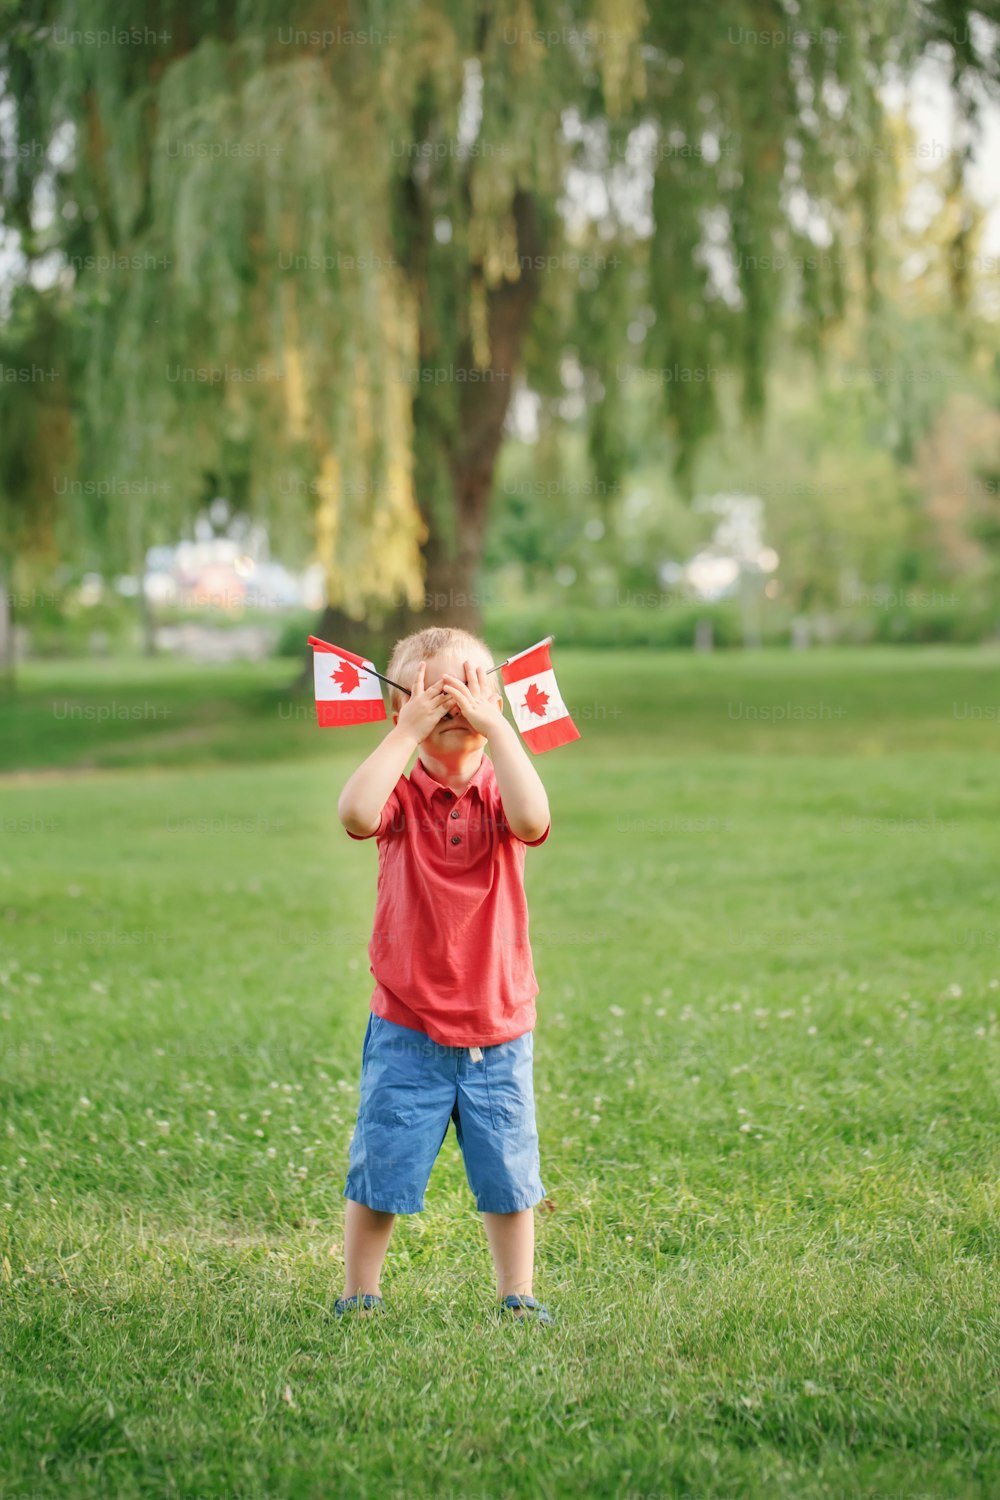 外の公園の緑の芝生の上に立ち、カナダの国旗を振っている白人の幼児の男の子。7月1日にカナダデーを祝う子供の市民。